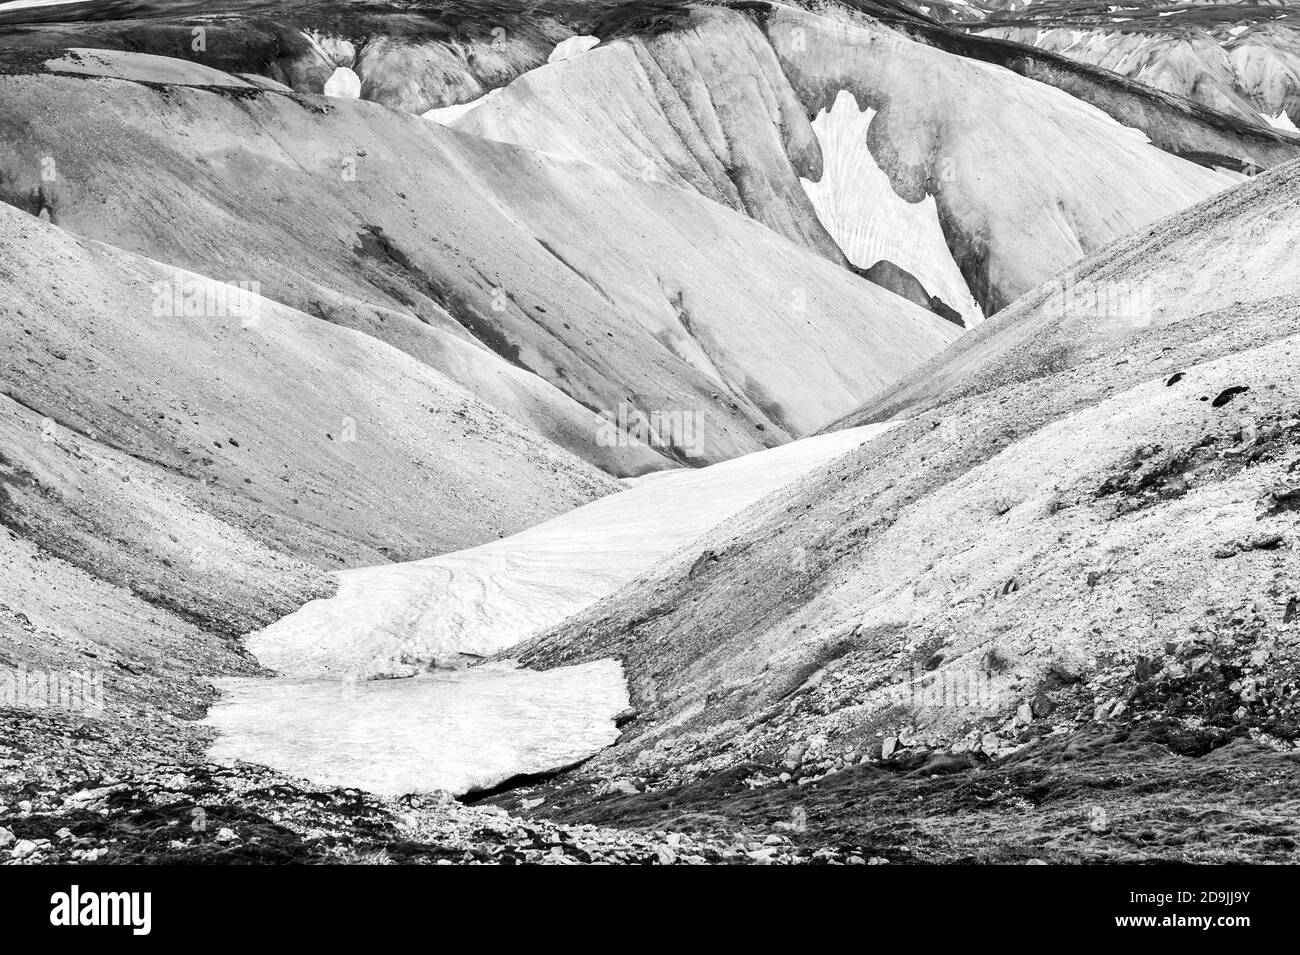 Belles montagnes à Landmannalaugar, Islande. Monochrome Banque D'Images